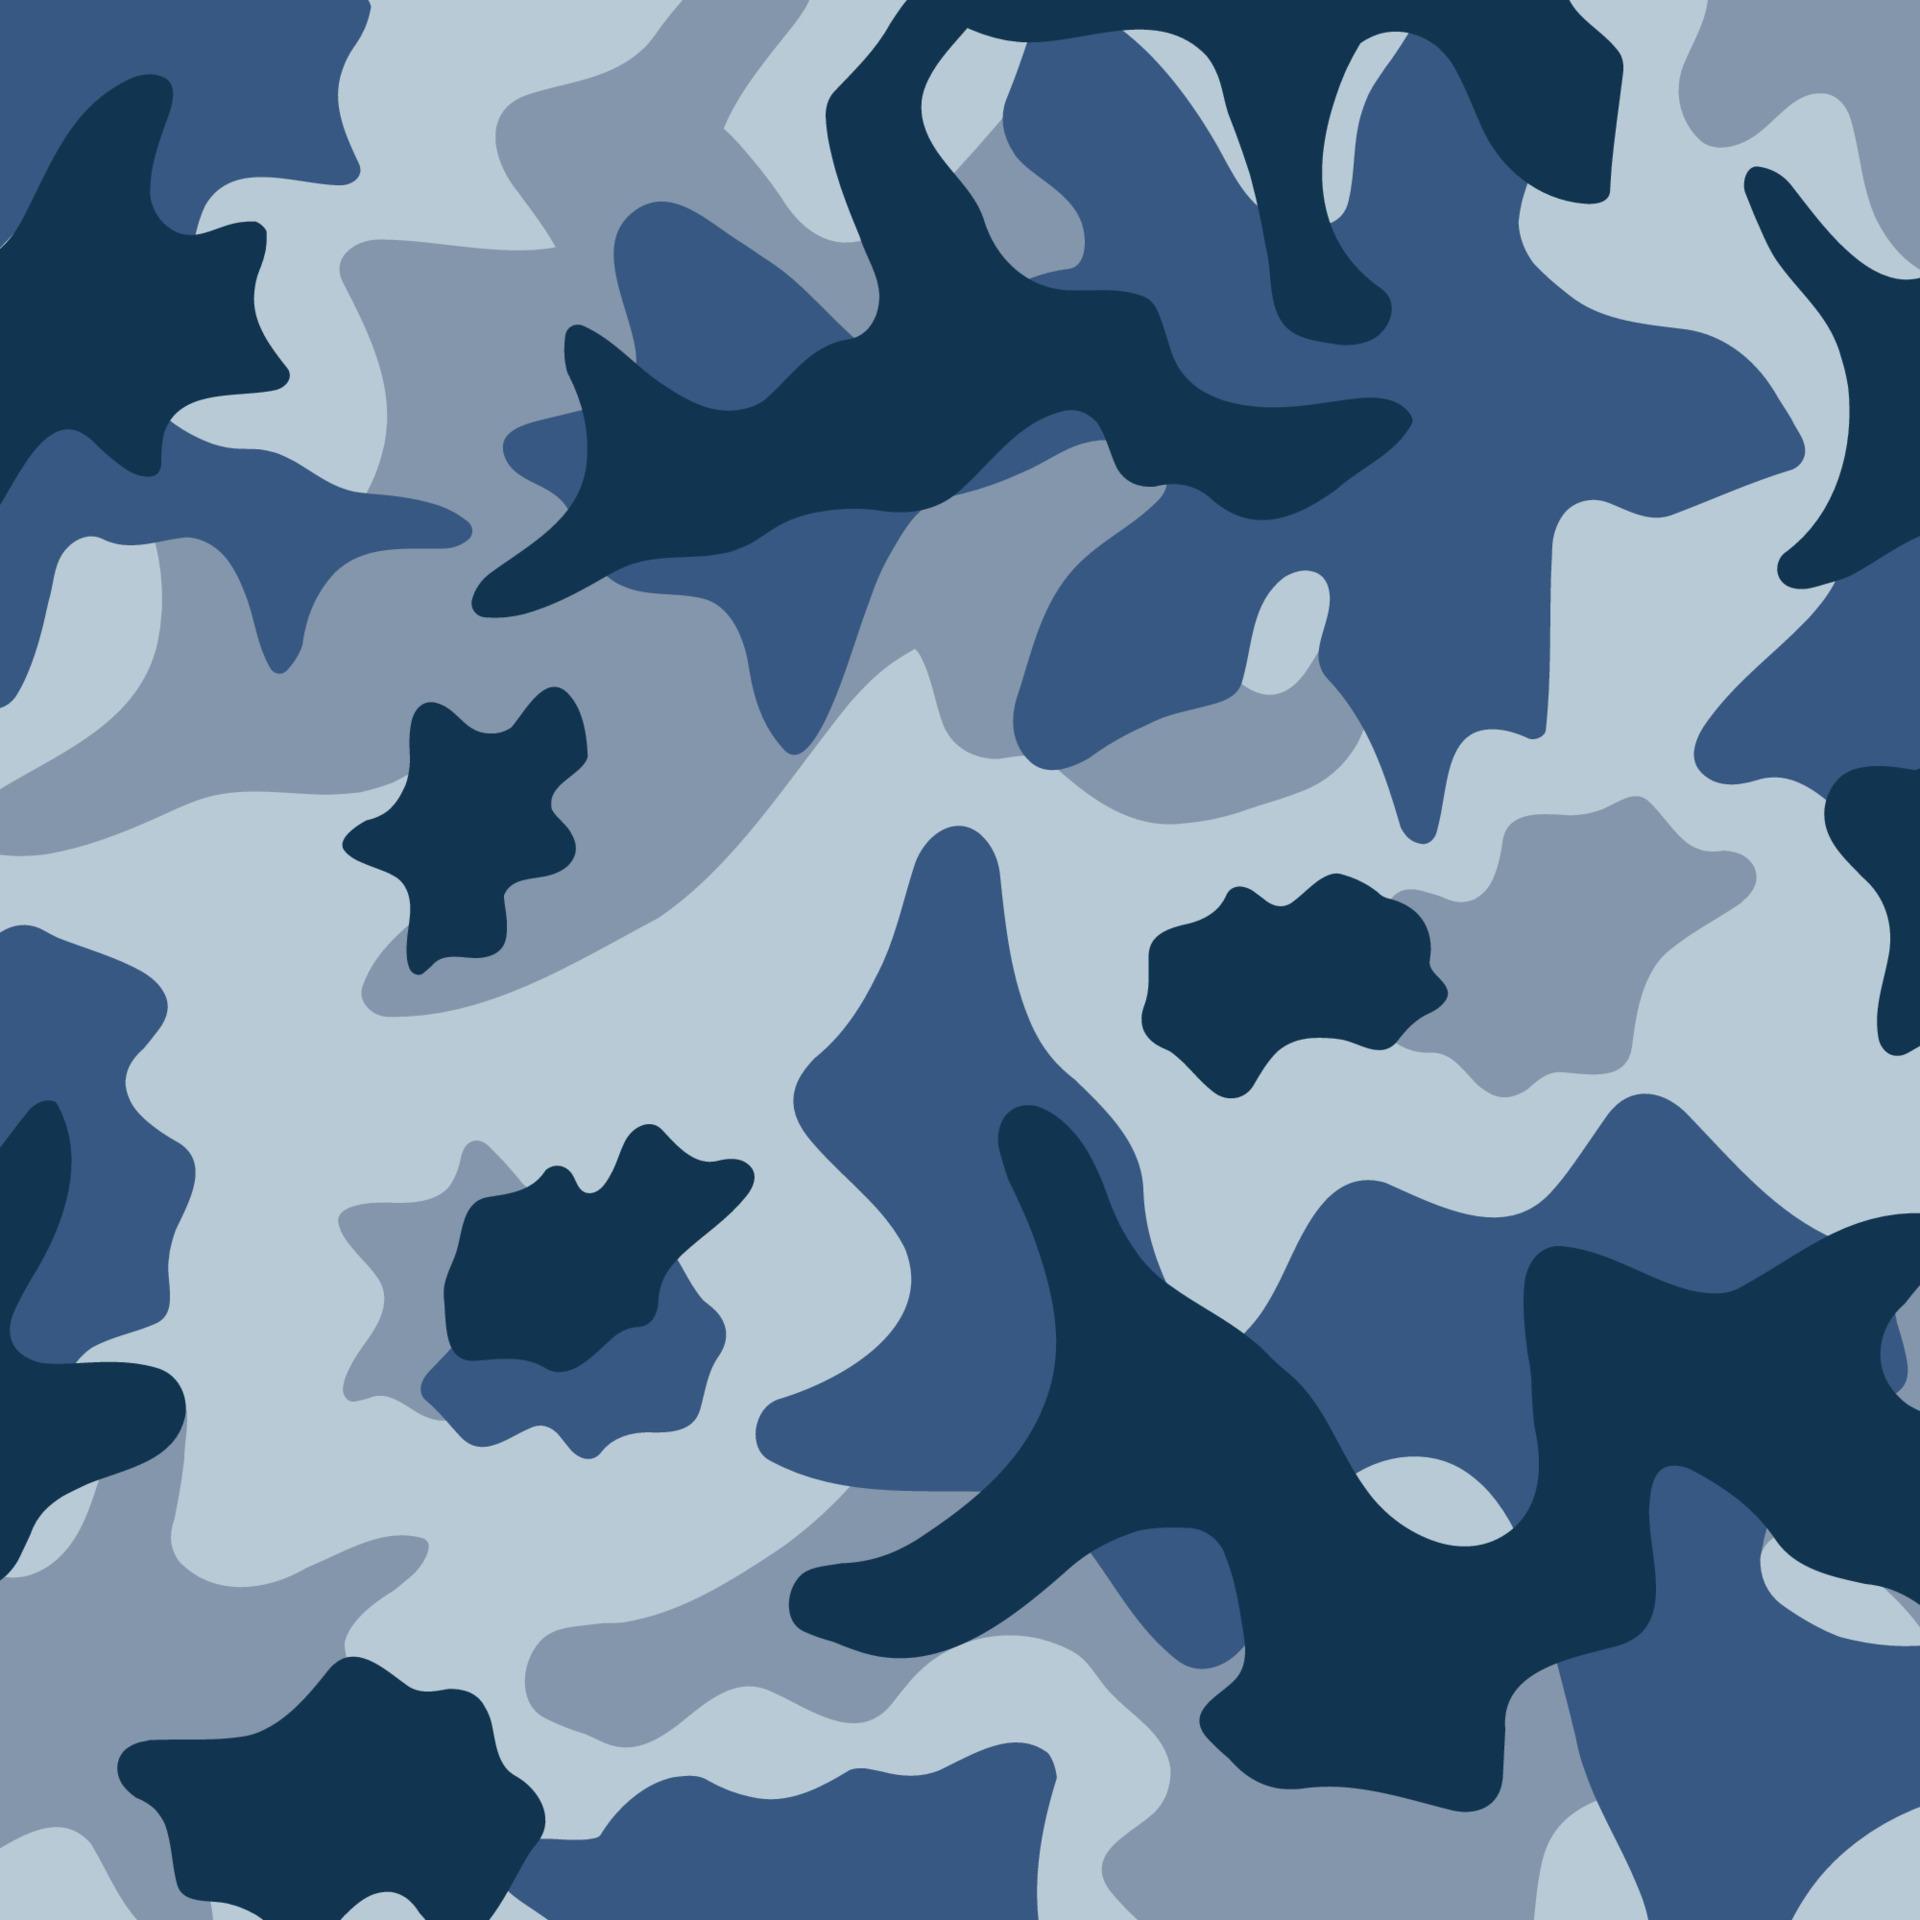 army stripes camouflage pattern blue navy sea ocean battlefield ...